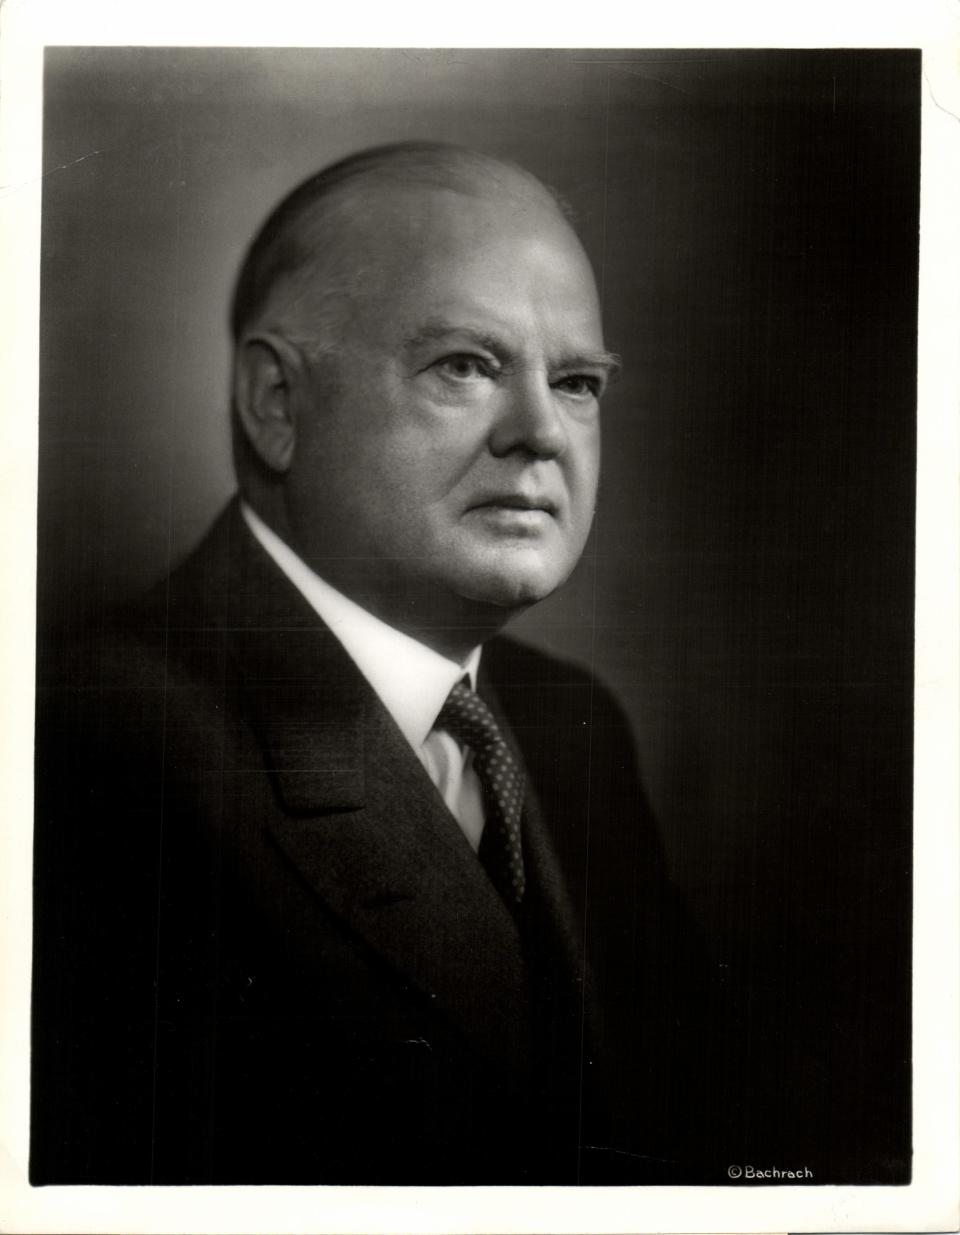 Herbert Clark Hoover